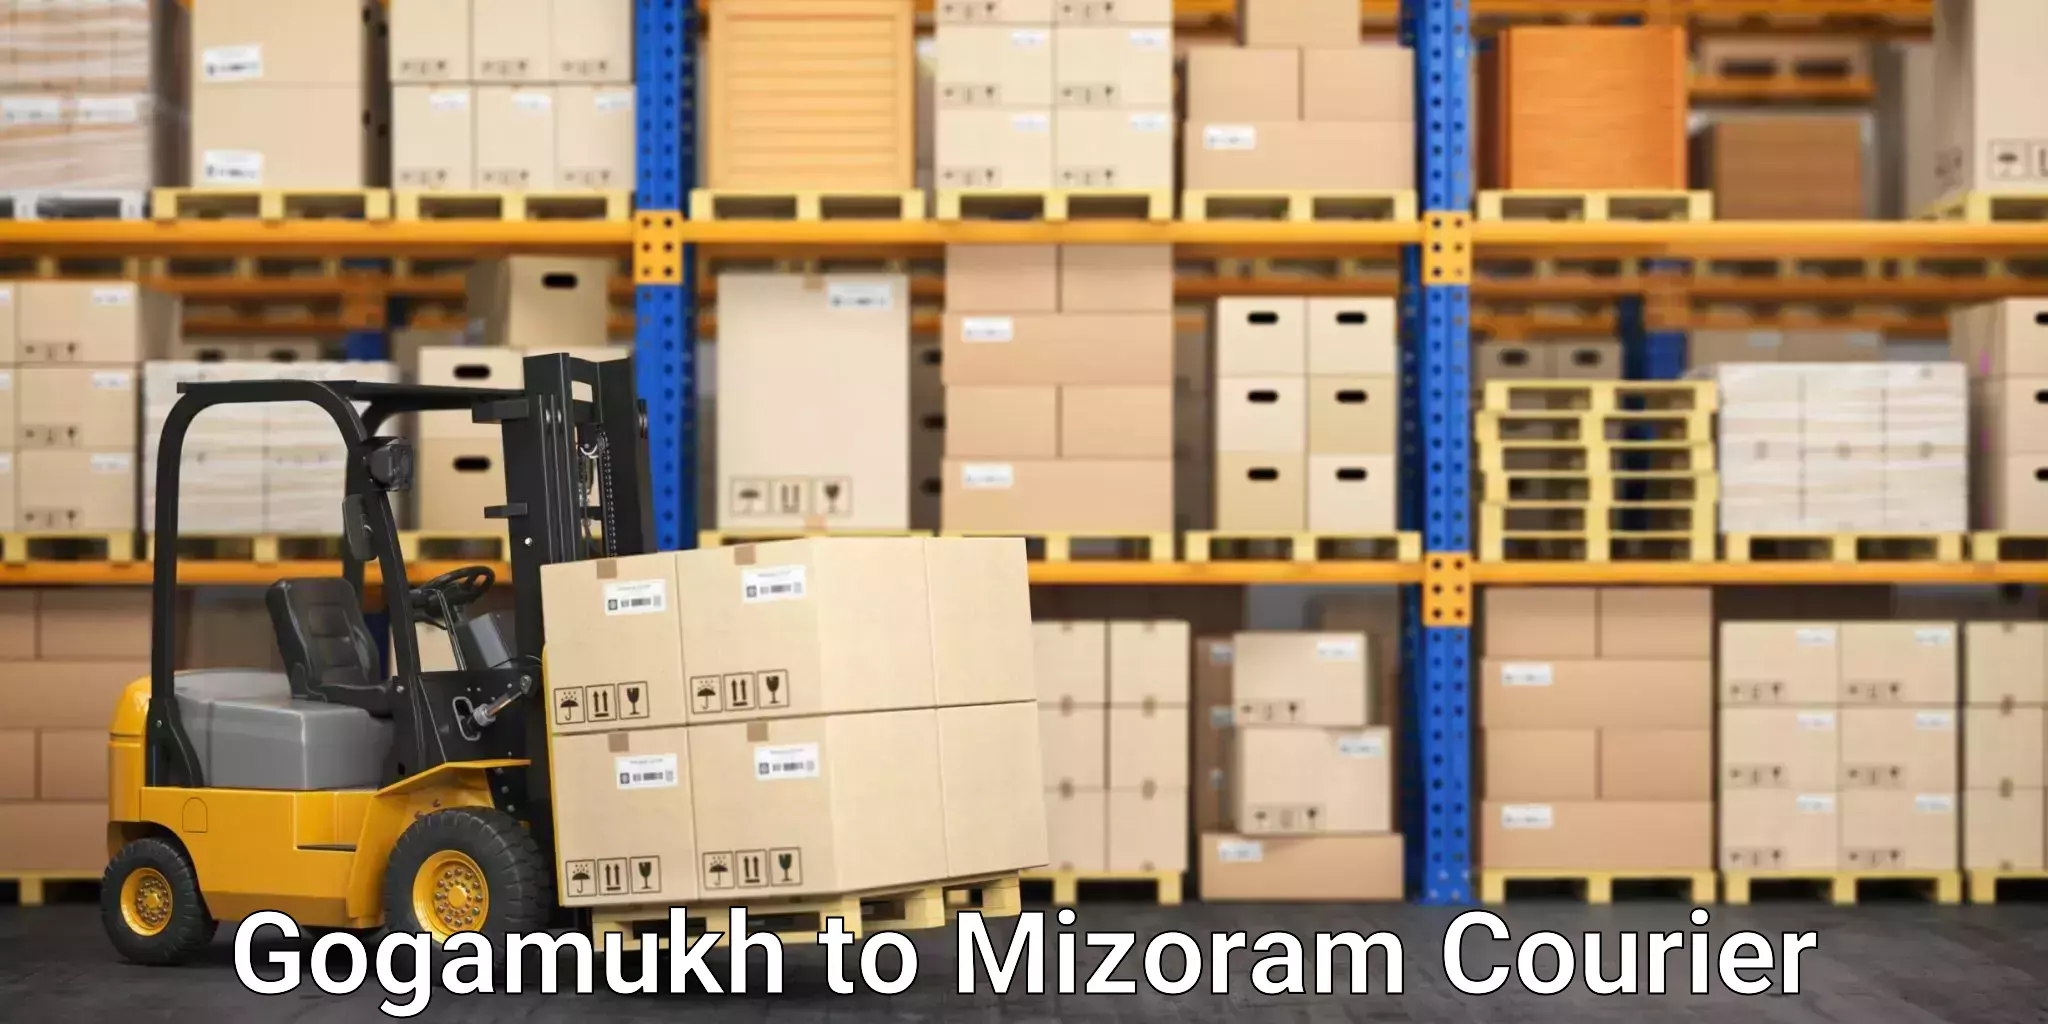 Efficient parcel tracking Gogamukh to Mizoram University Aizawl